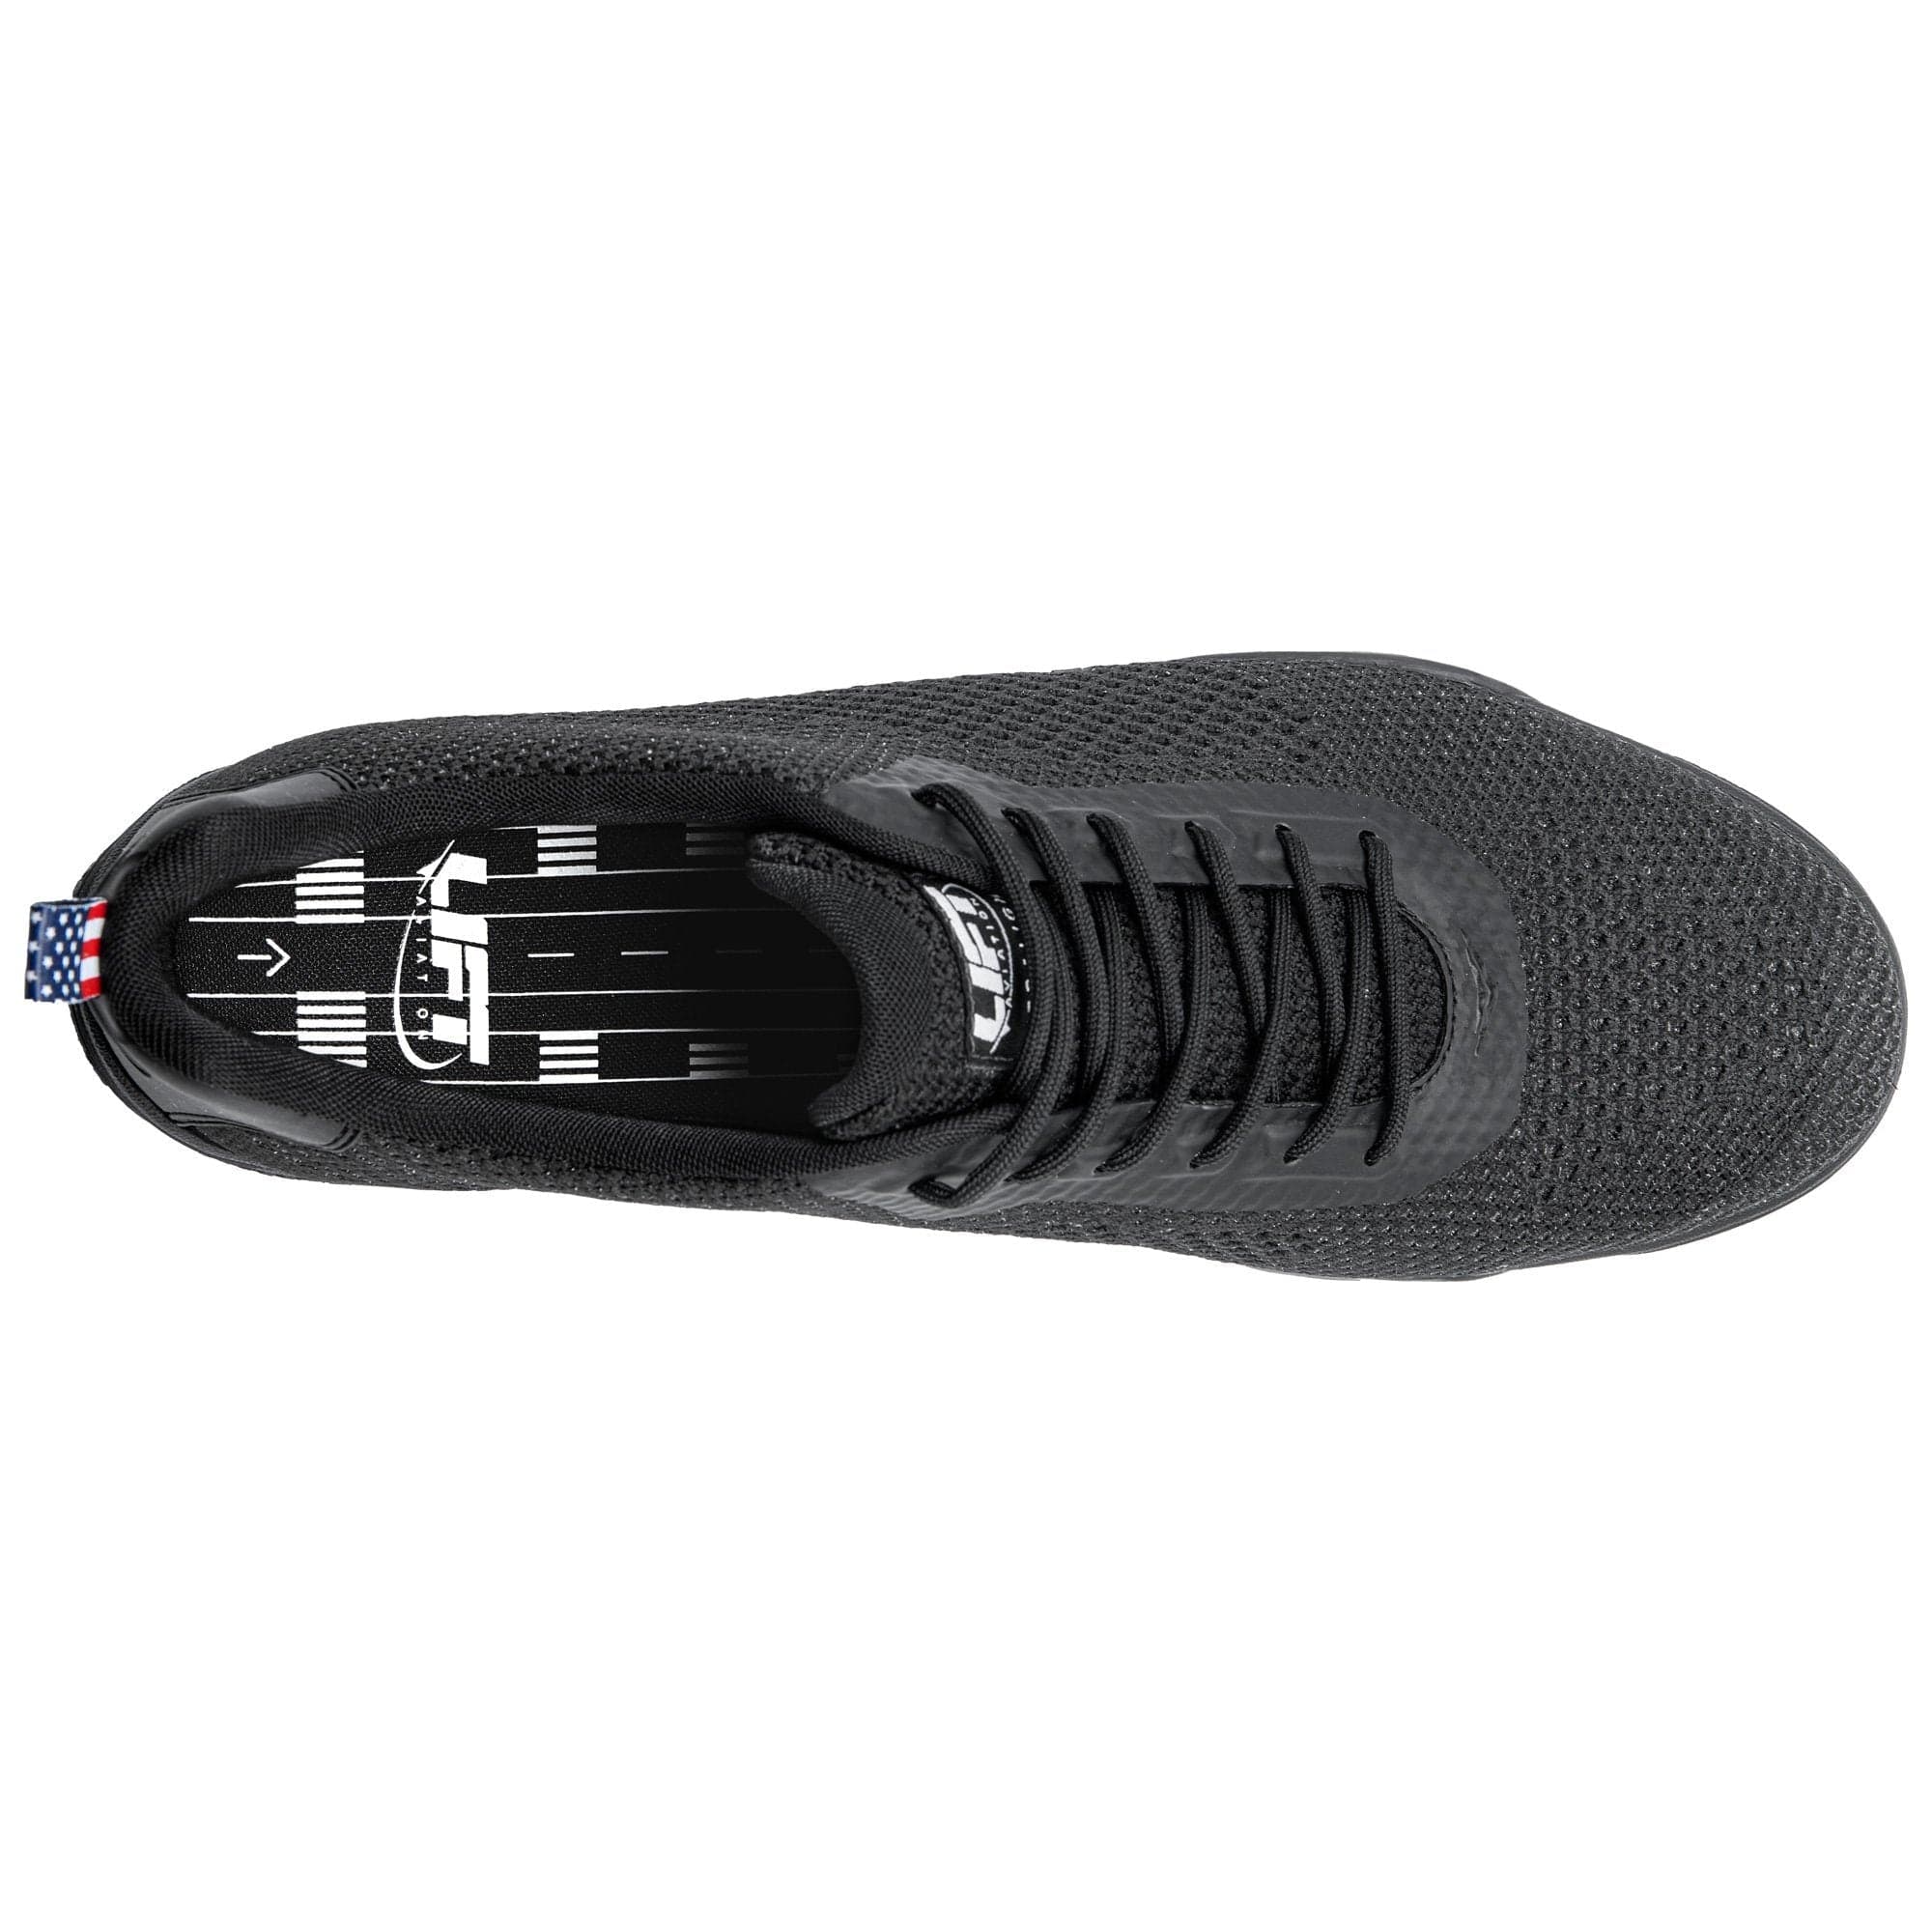 Lift Aviation Air Boss Black Ultraknit (Normal Width) Pilot Shoes